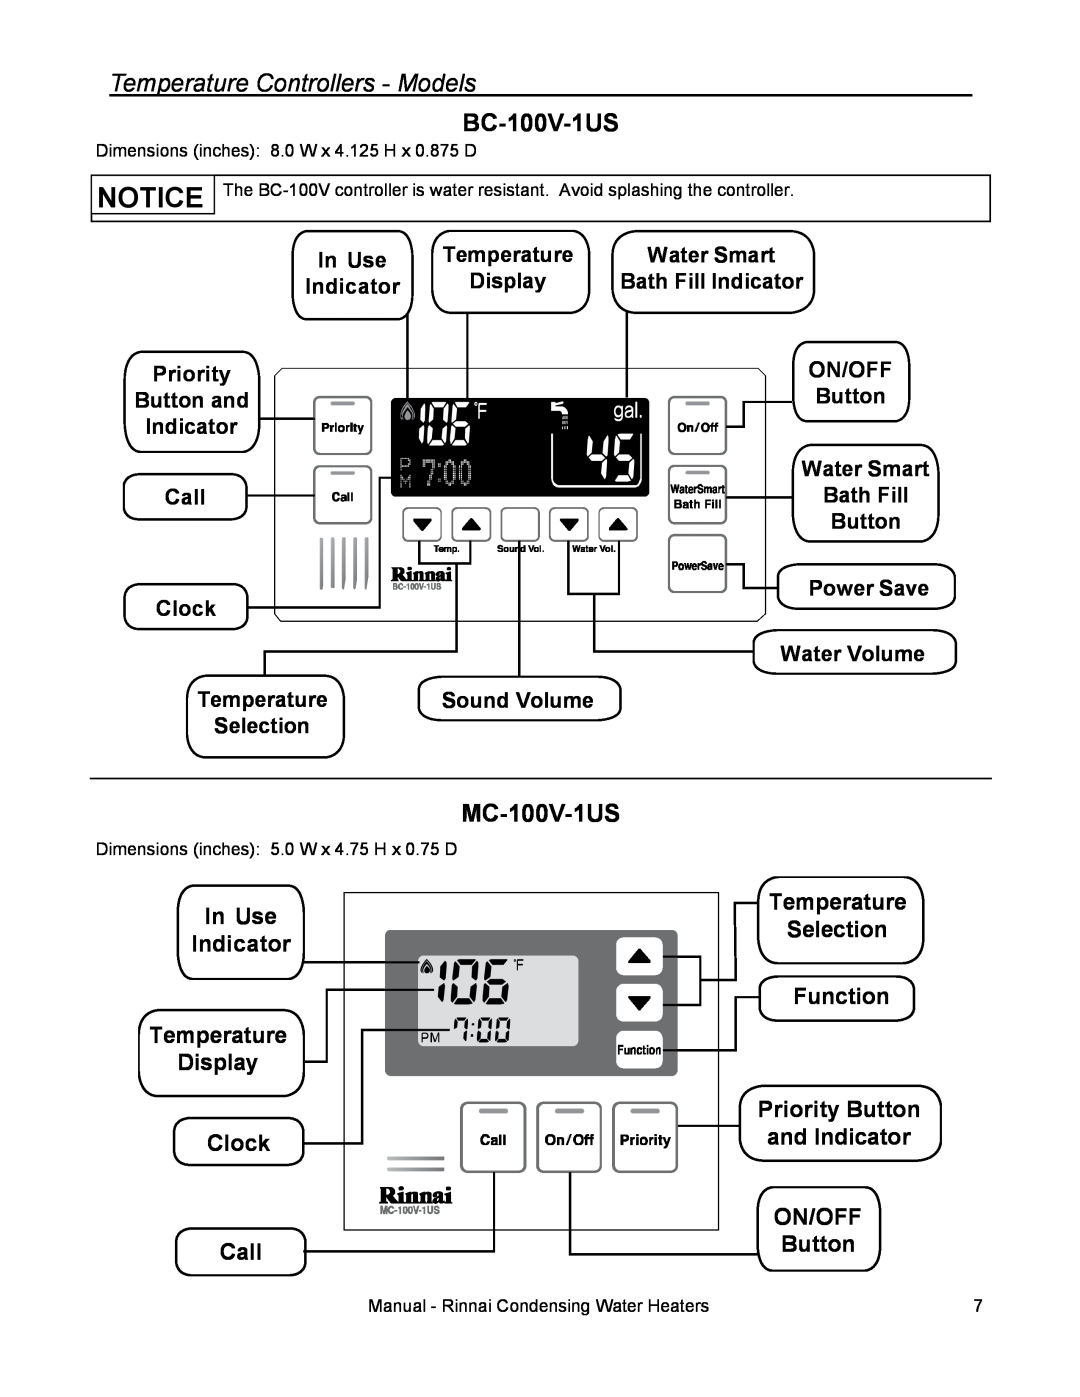 Rinnai RC98HPI BC-100V-1US, MC-100V-1US, In Use Indicator Temperature Display Clock Call, Temperature Selection Function 